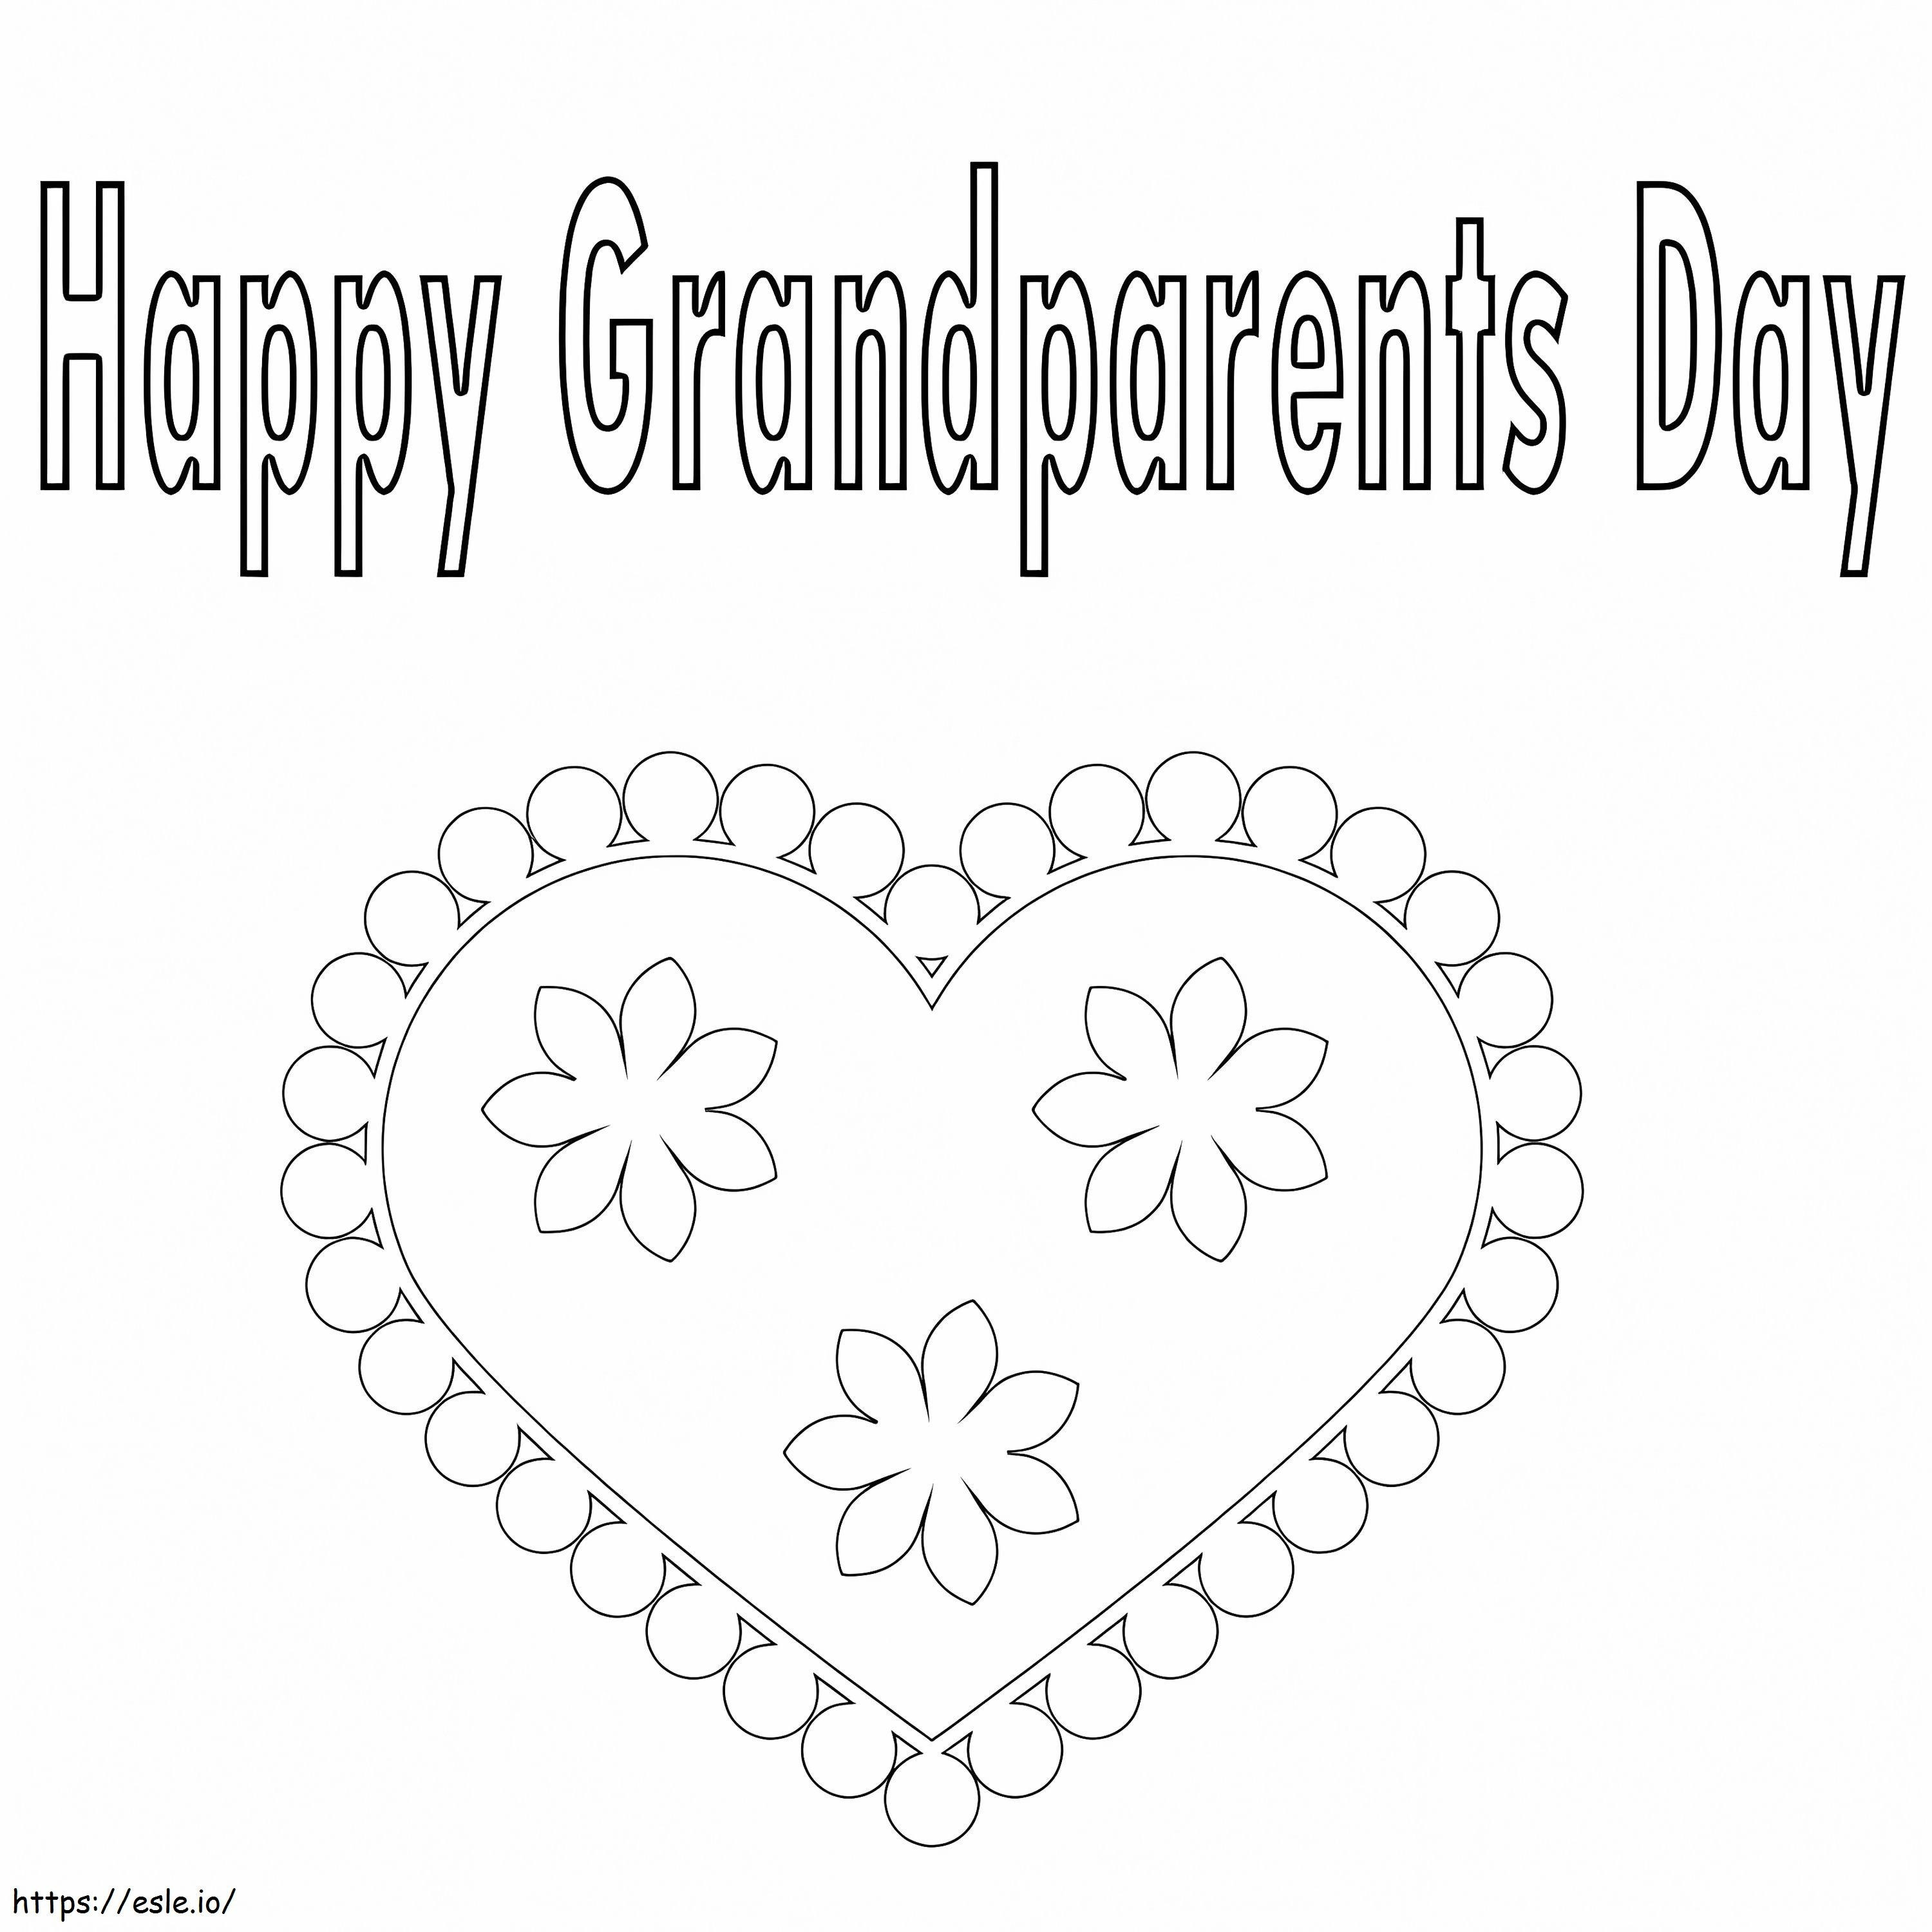 Szczęśliwego Dnia Babci i Dziadka 2 kolorowanka